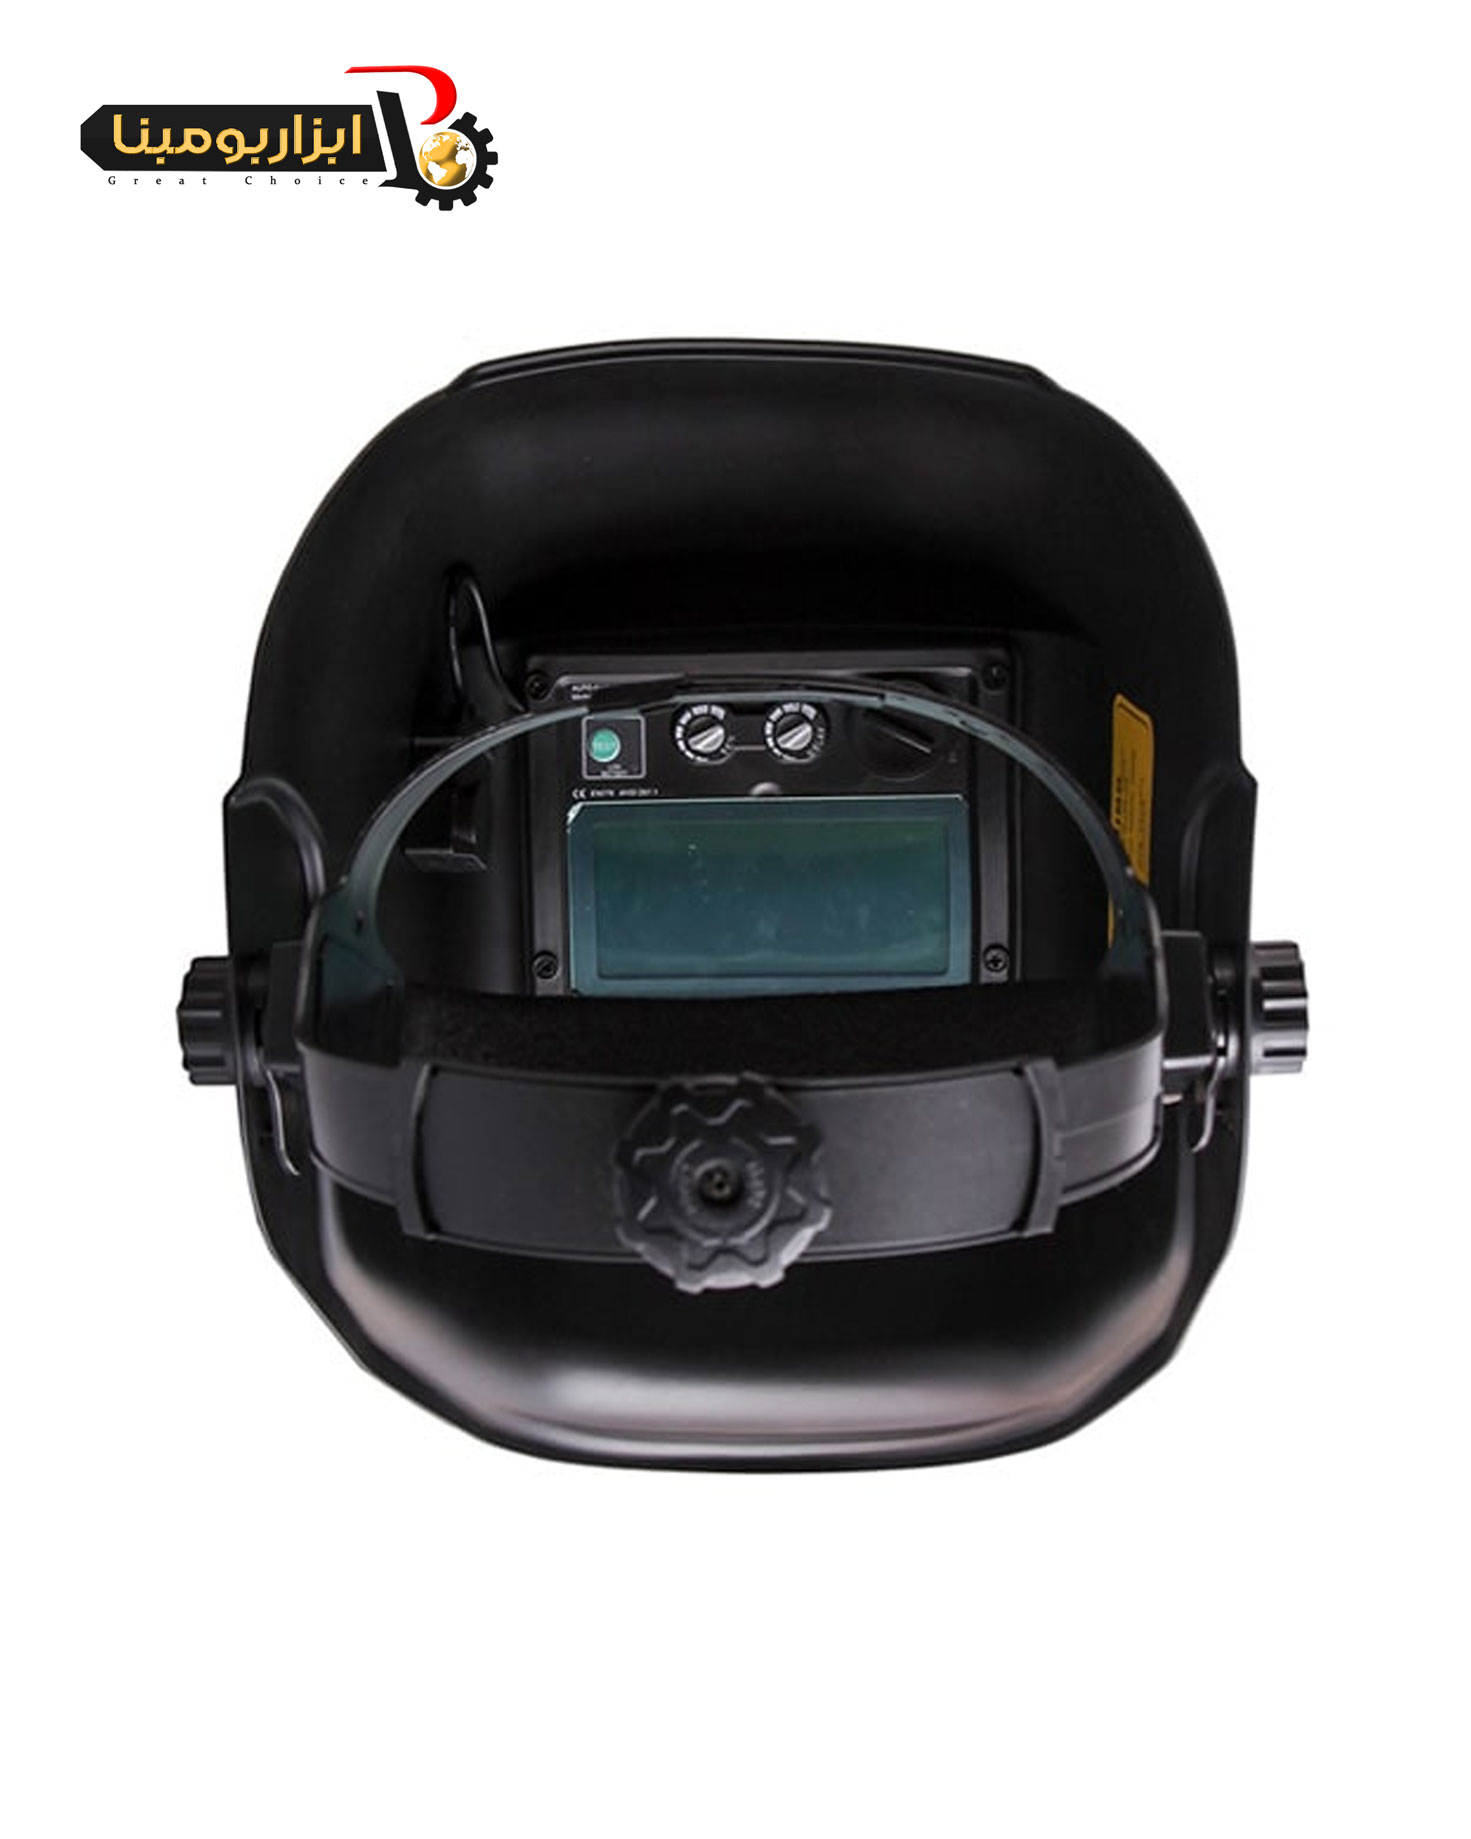 ماسک جوشکاری اتوماتیک هاردکس مدل WH-B